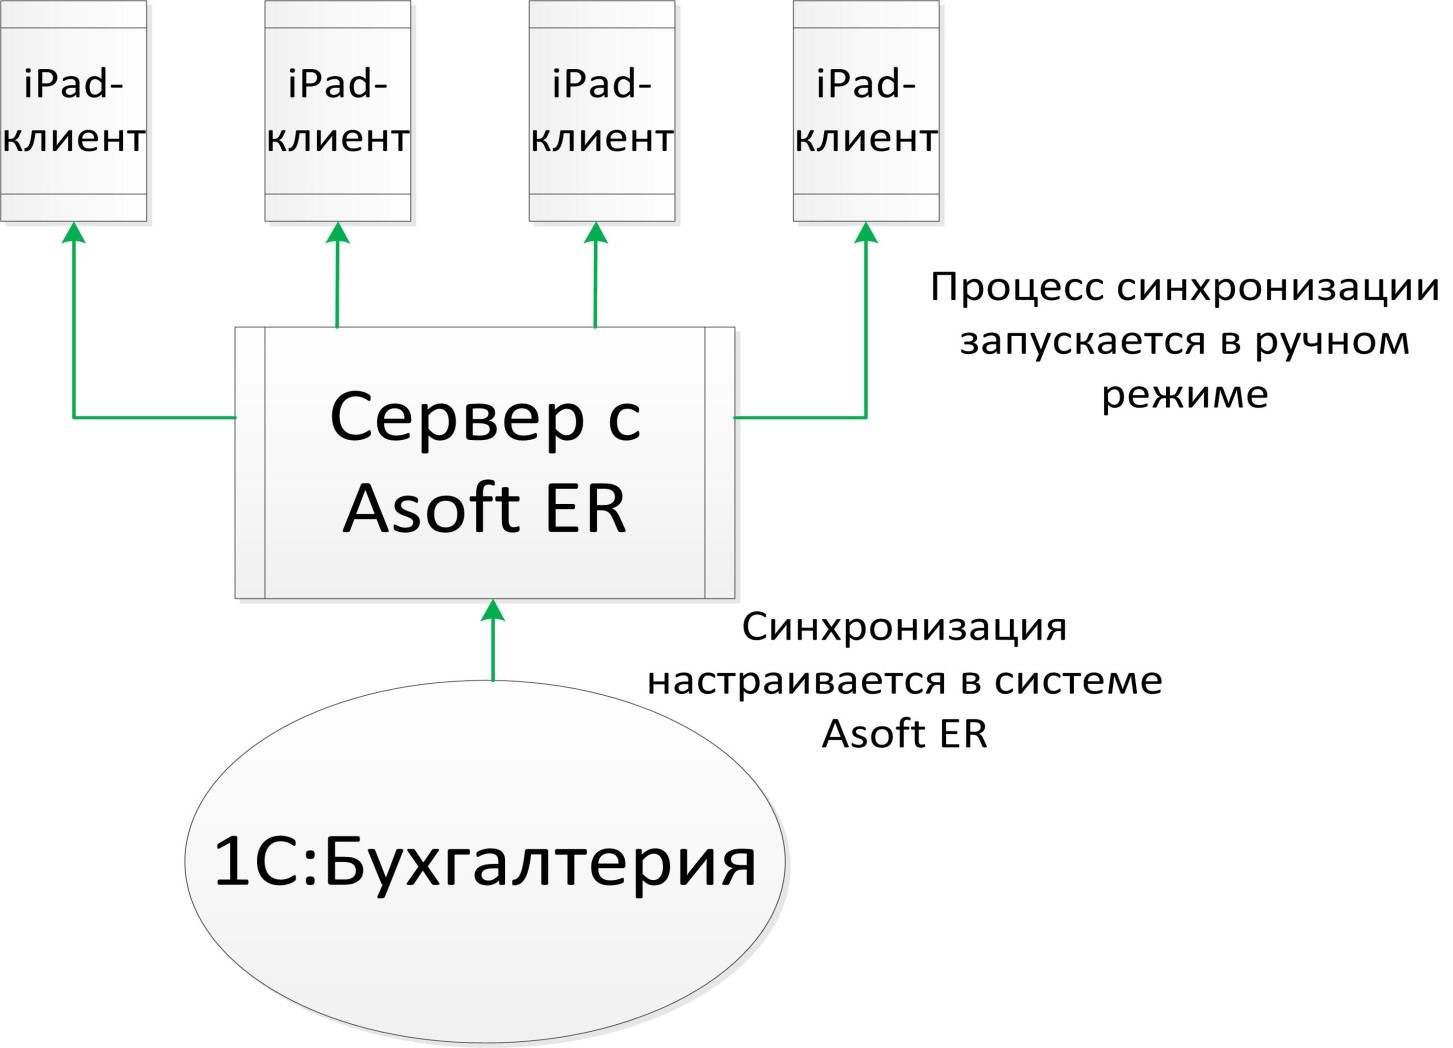 Рис.1. Схема синхронизации данных системы Asoft ER